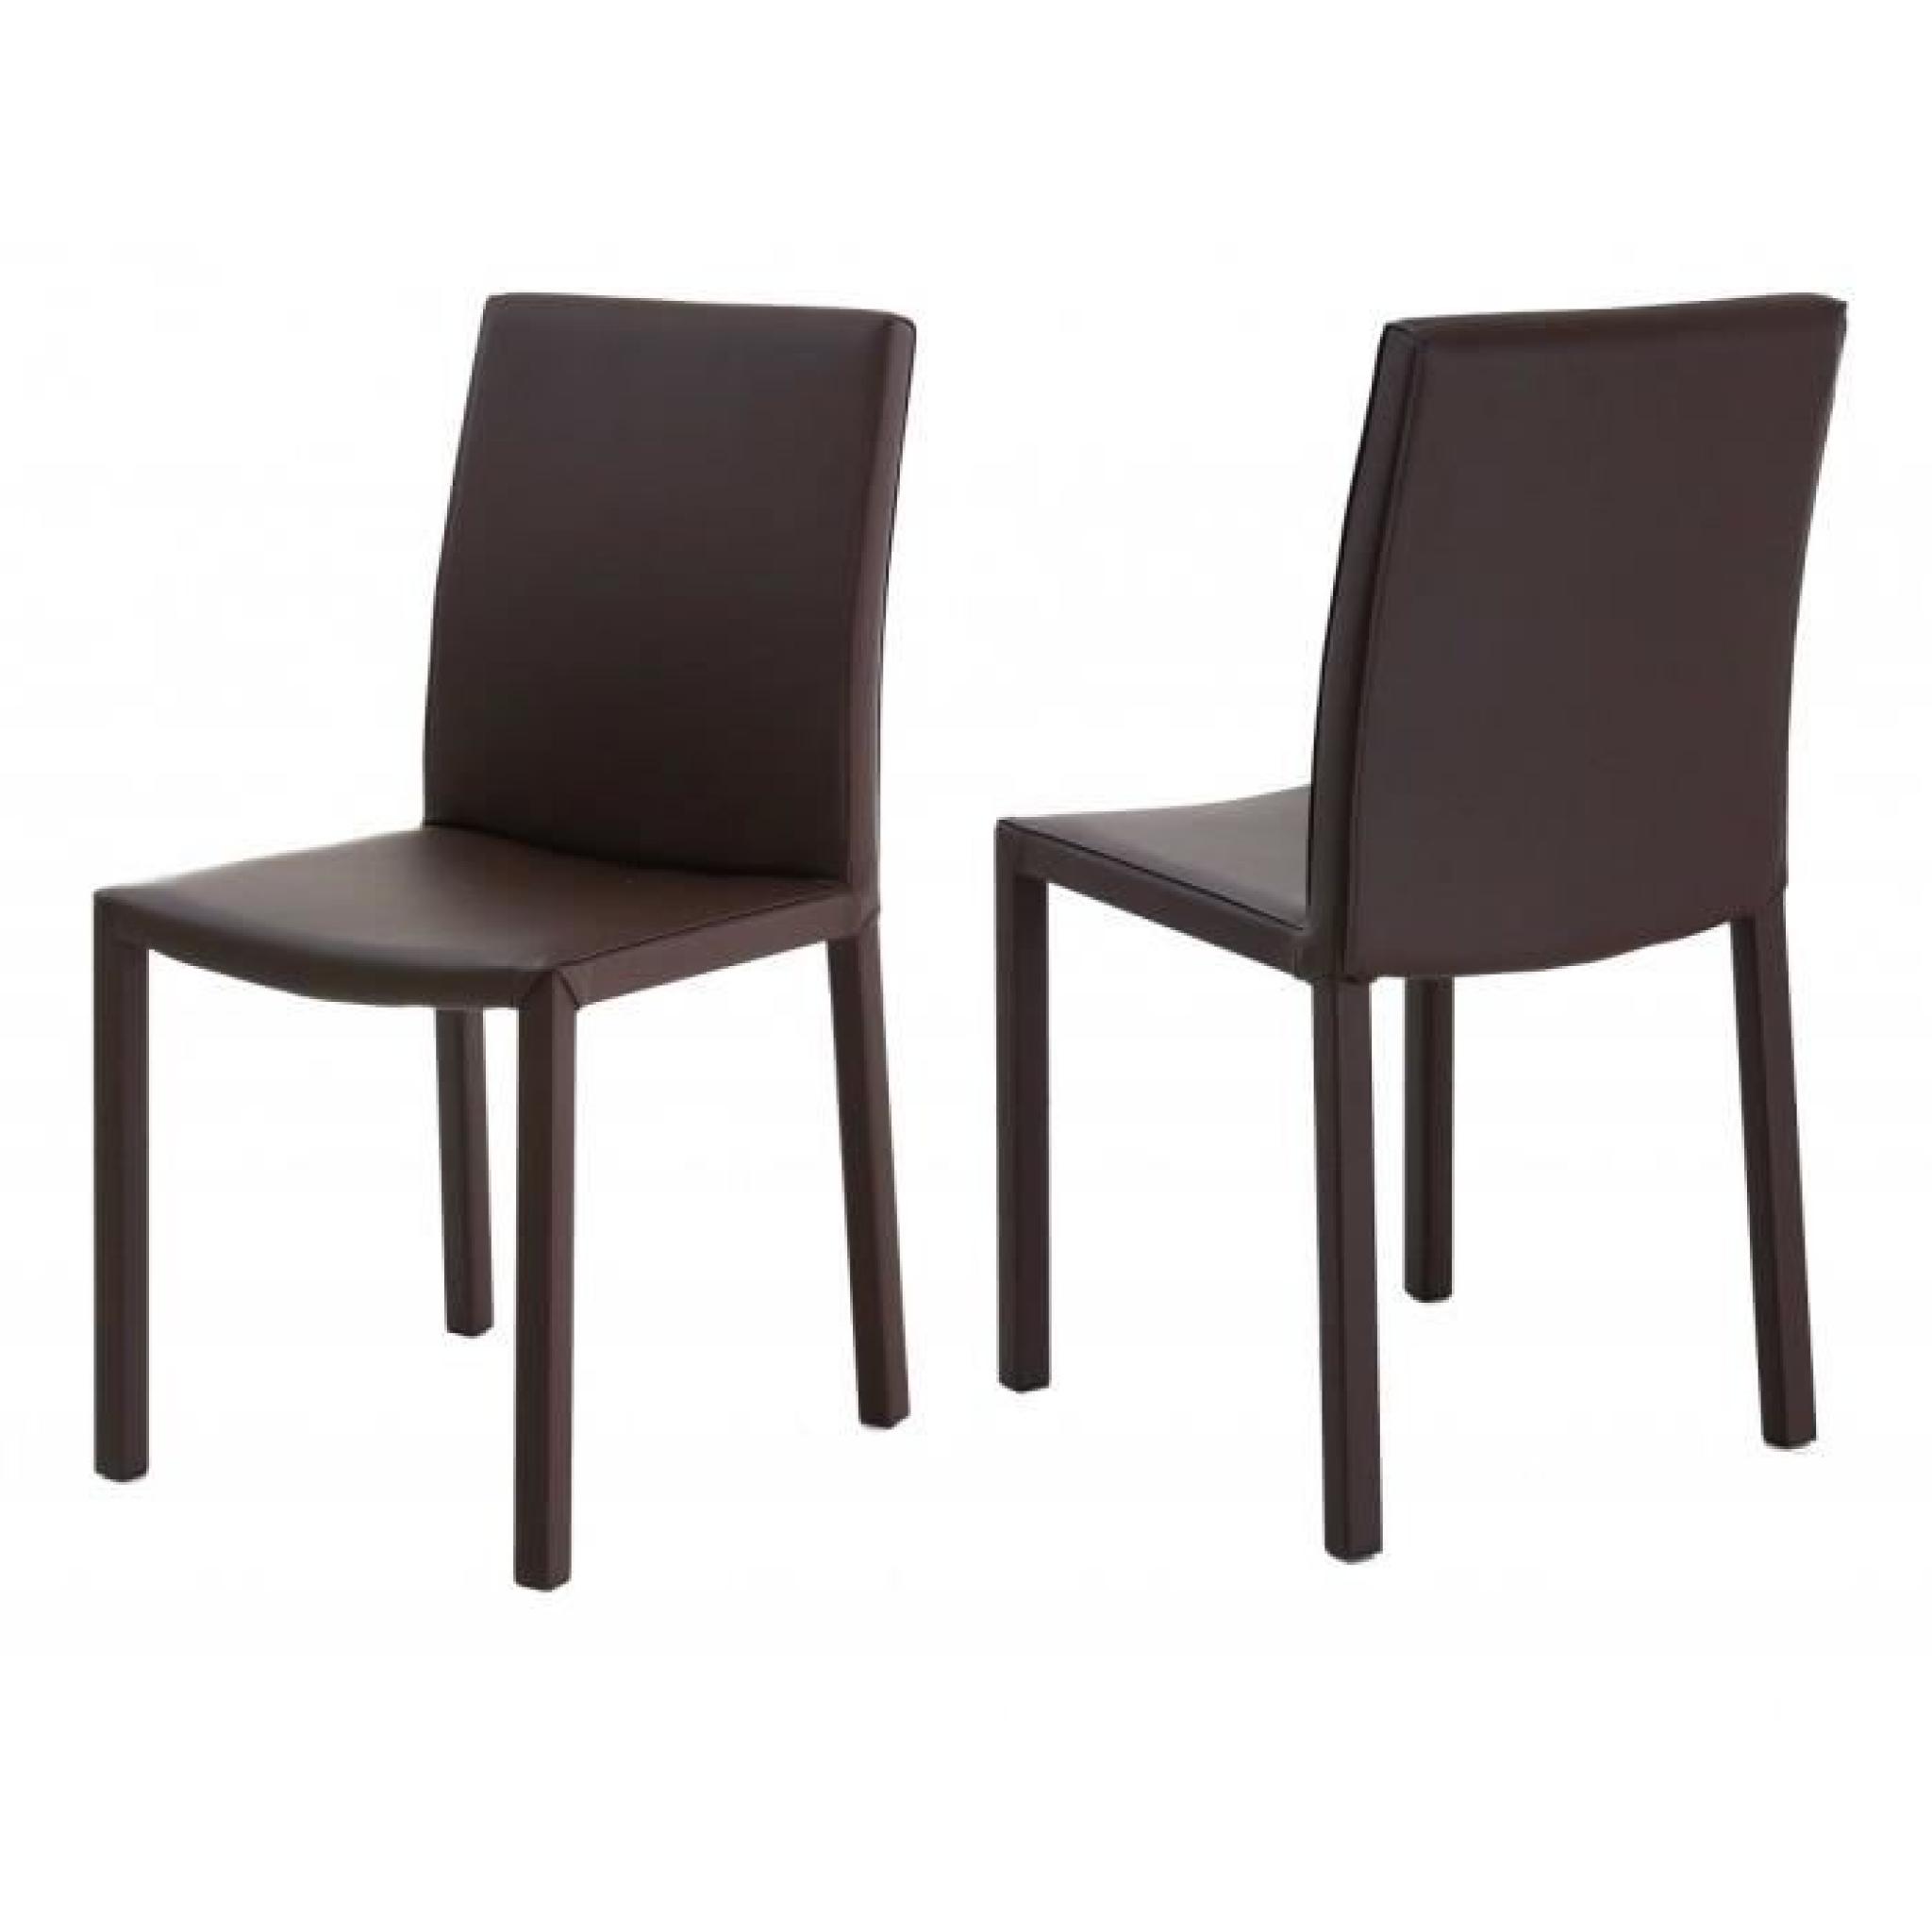 2x Chaise design marron Nunzia - Id'Click pas cher